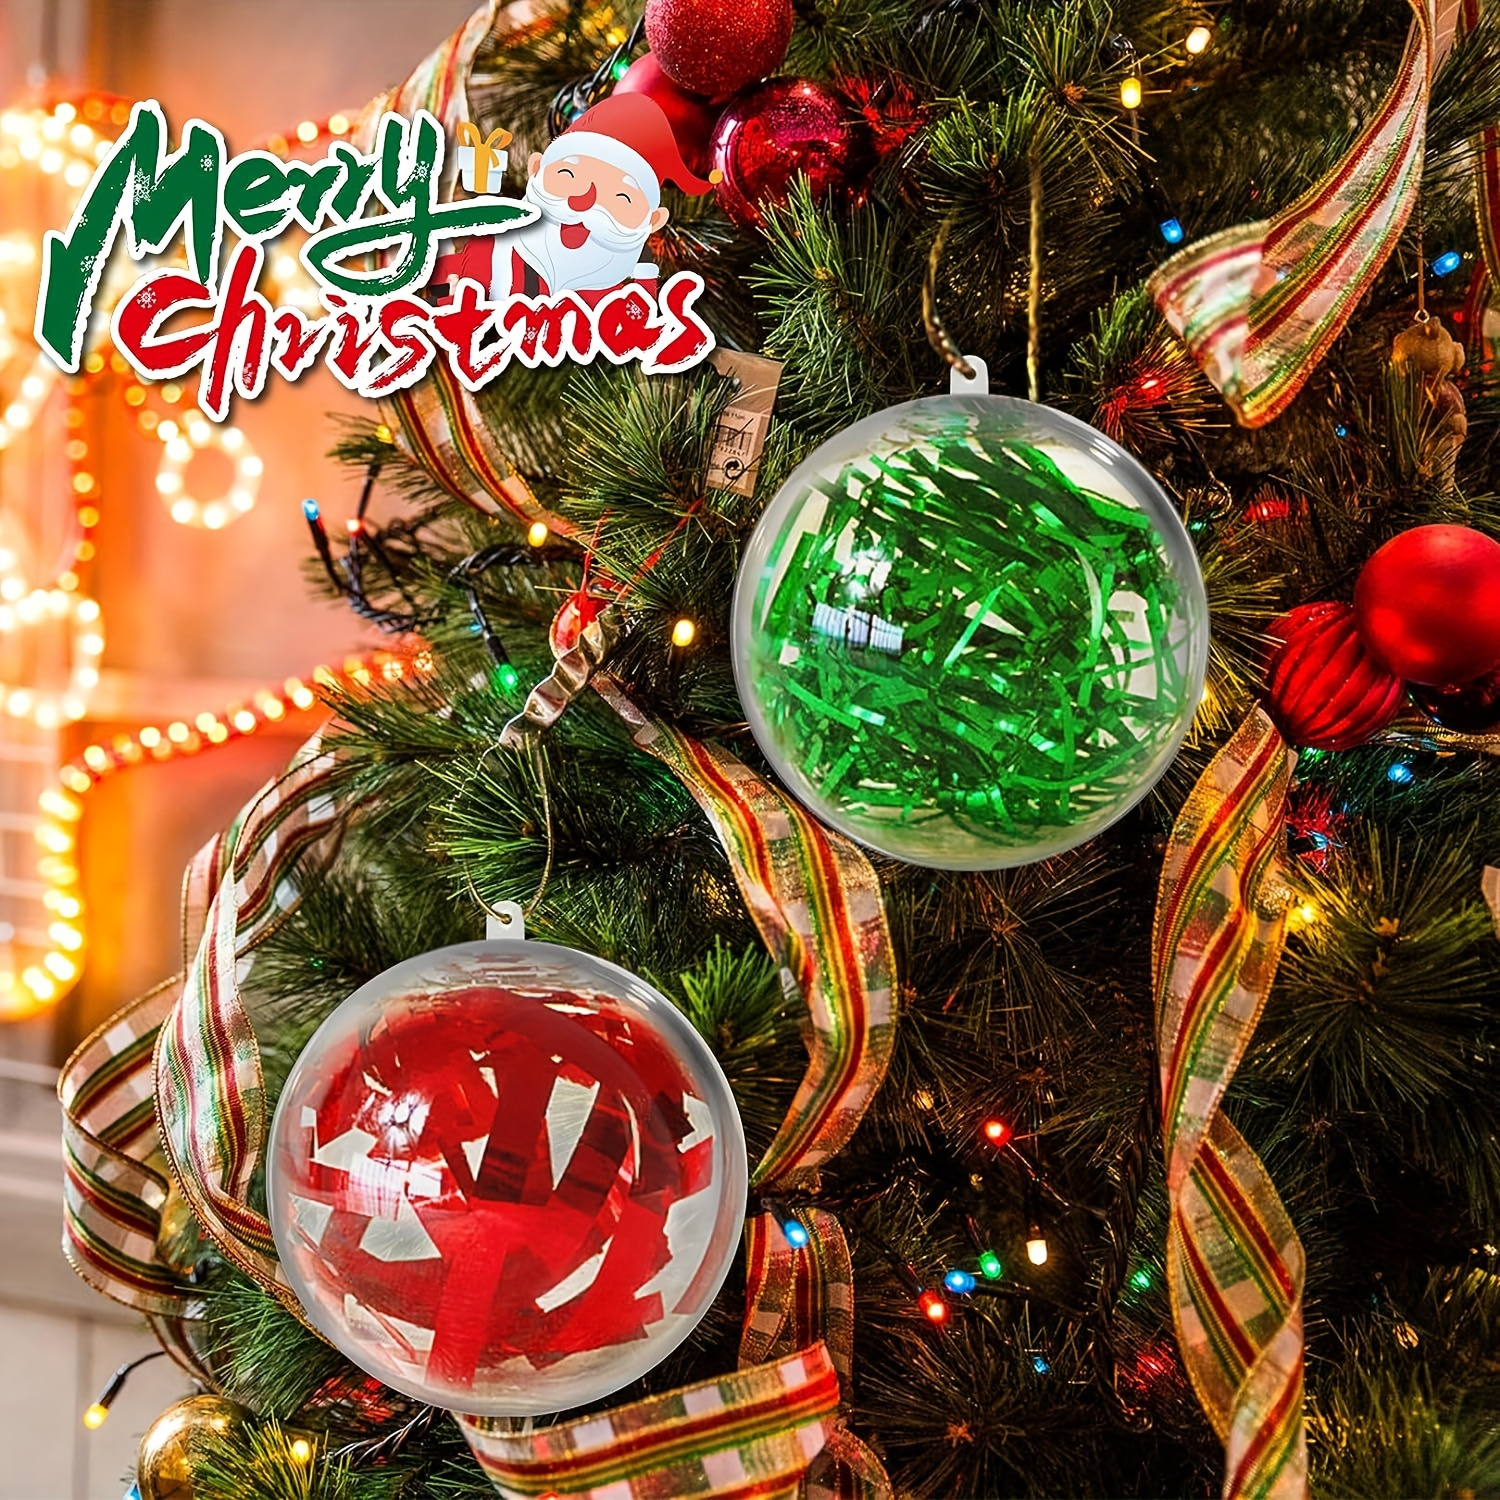 Clear Plastic Flat Disc Ornaments 3.15 Inch DIY Transparent Fillable  Ornaments Balls Christmas Hanging Ornaments Christmas Tree Decor Holiday  Decorative Craft Tree Ornaments (Silver, 24 Pcs) 